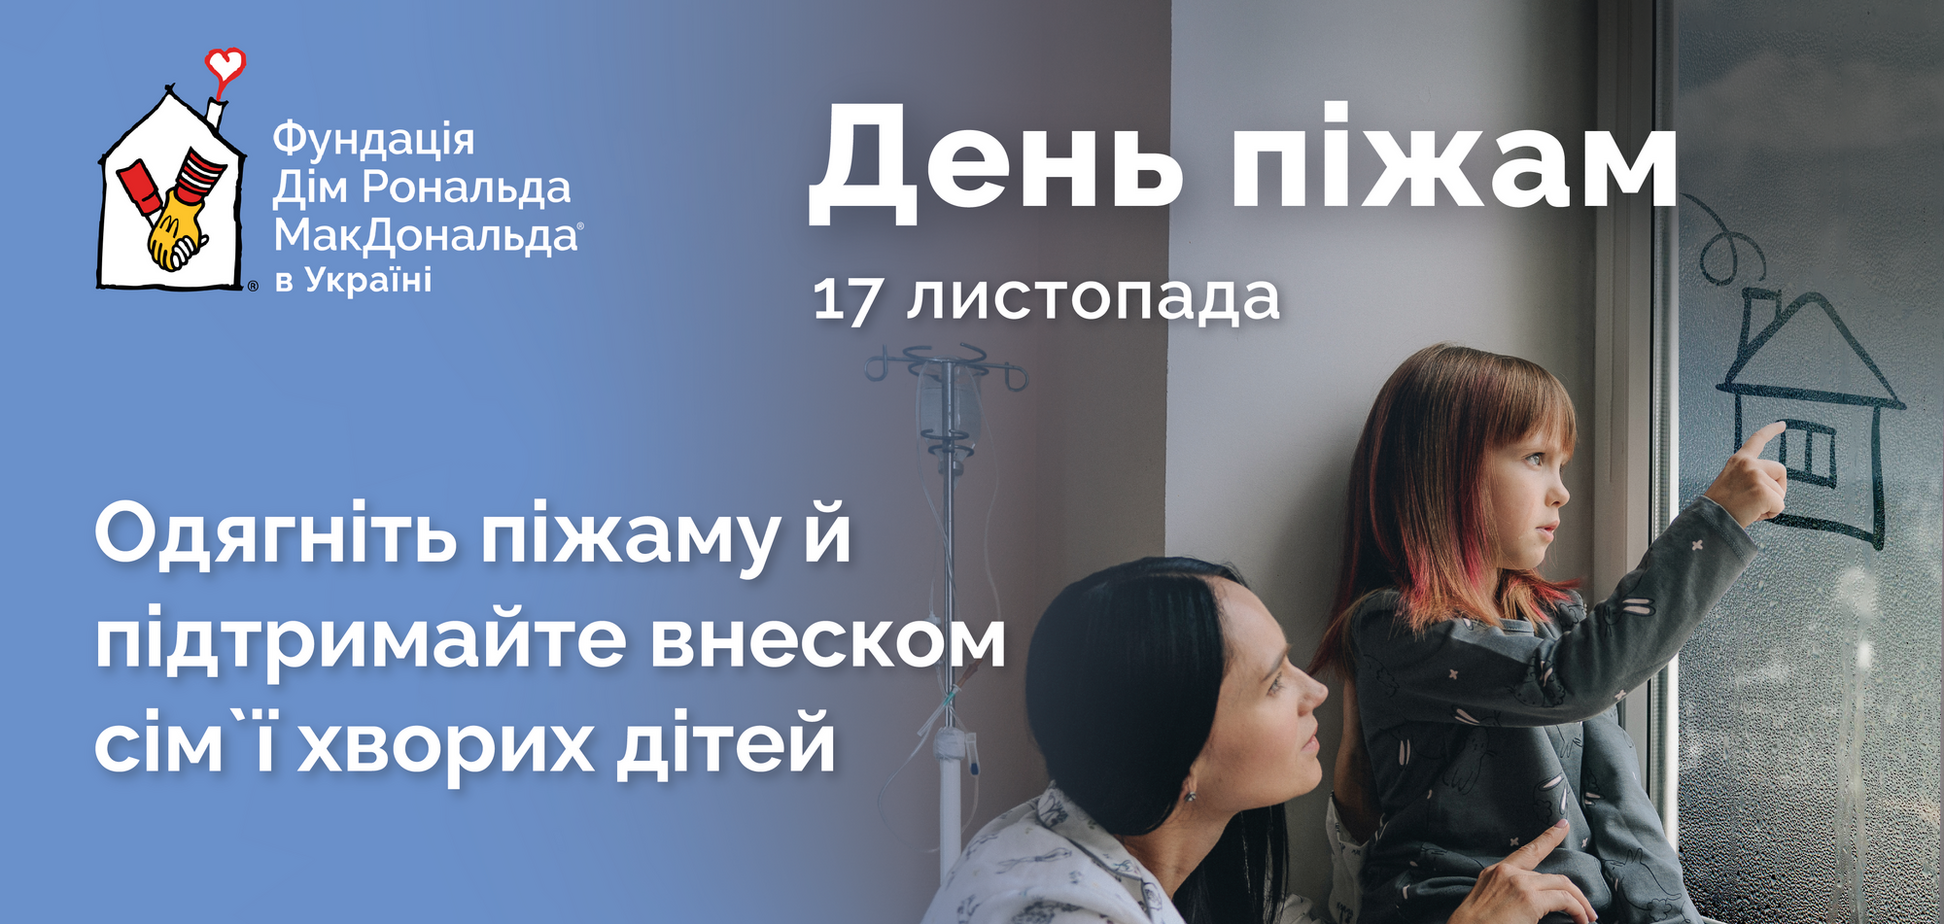 17 ноября в Украине состоится благотворительный День пижам: как присоединиться